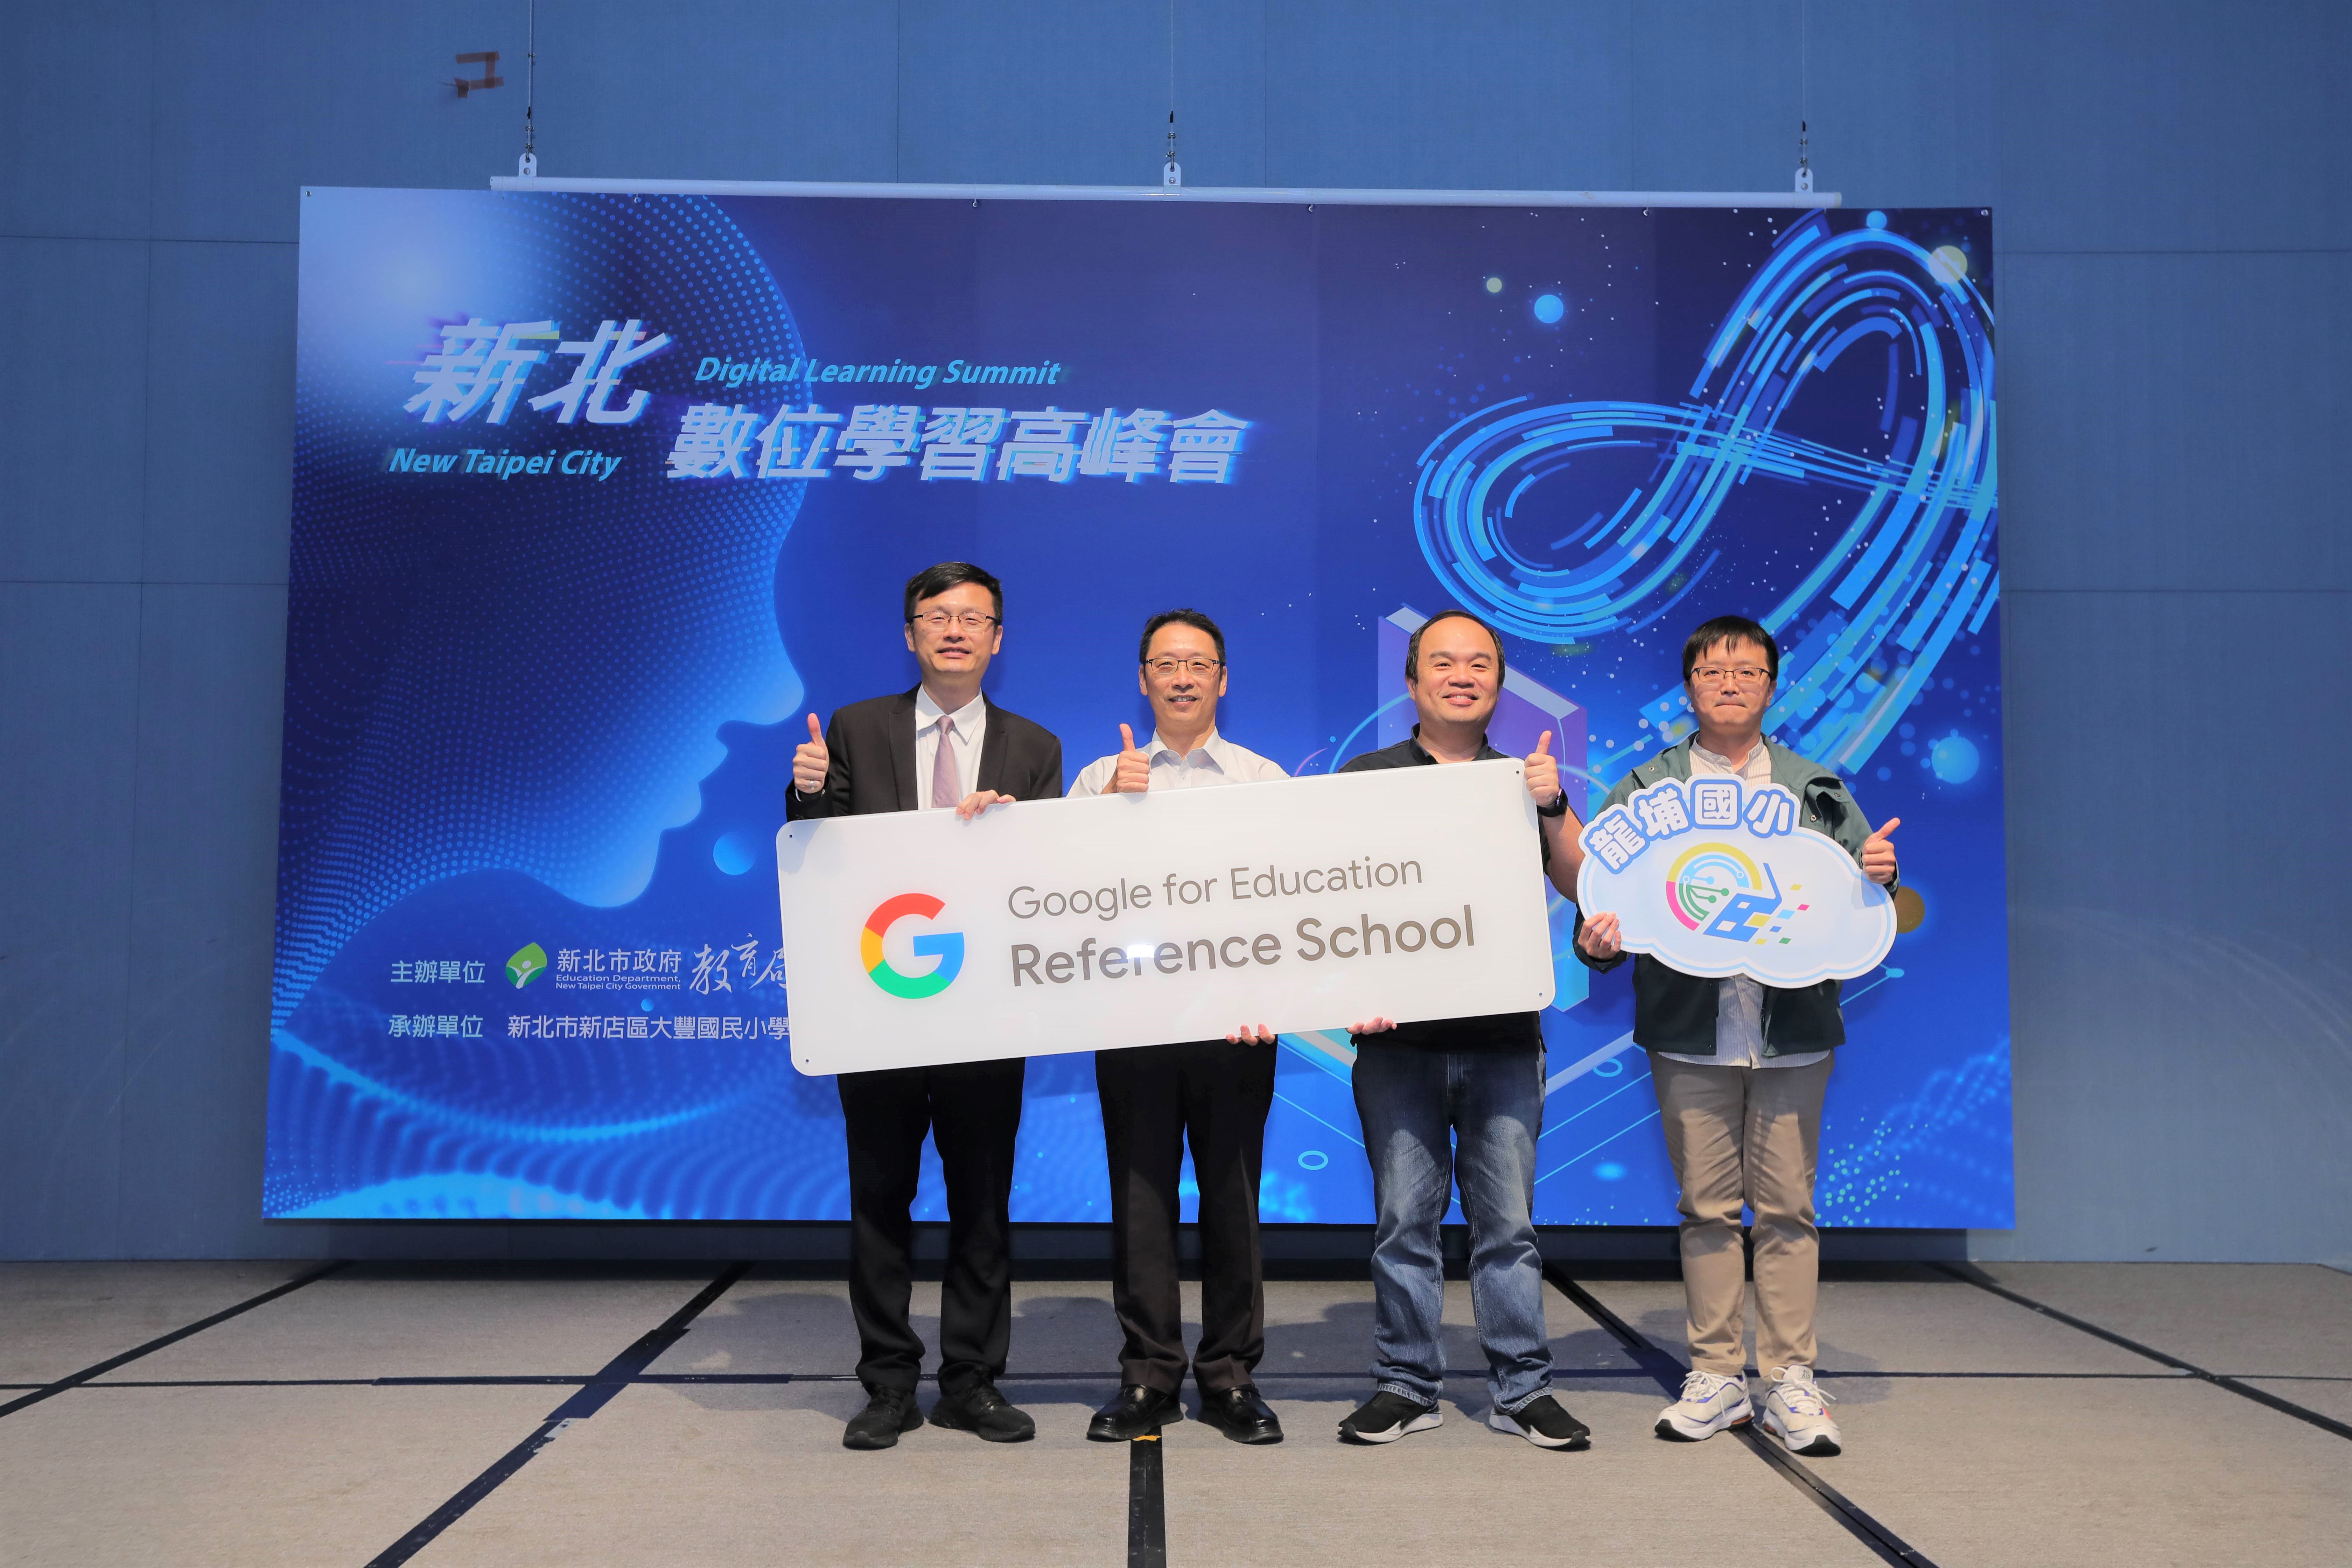 新北市教育局長張明文(左1)宣布龍埔國小為全台第一所榮獲Google Reference School認證資格.jpg